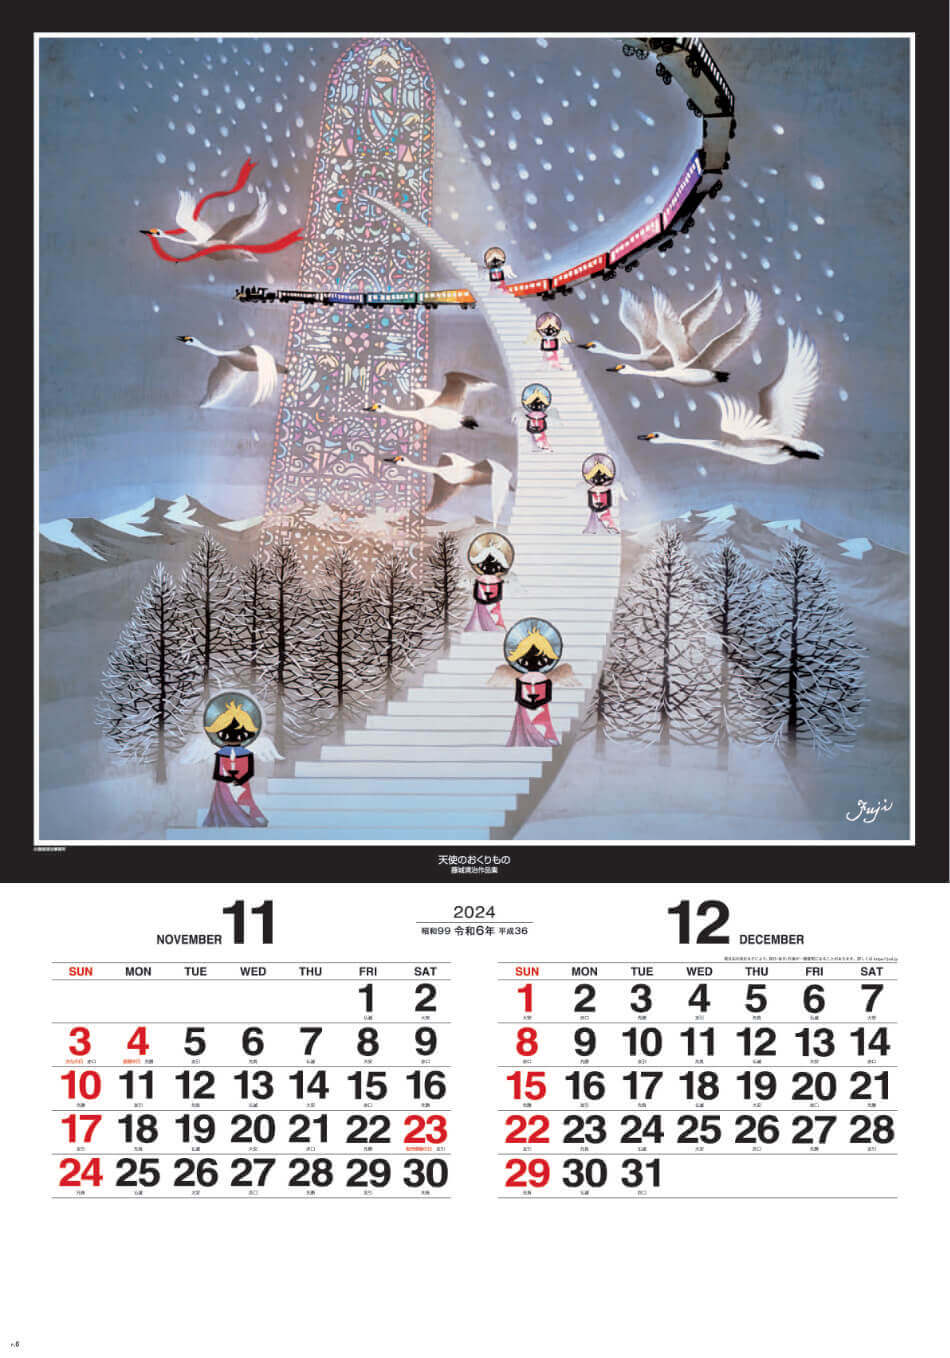 SG-508 遠い日の風景から(影絵）-藤城清治- (フィルムカレンダー) 2024年カレンダー